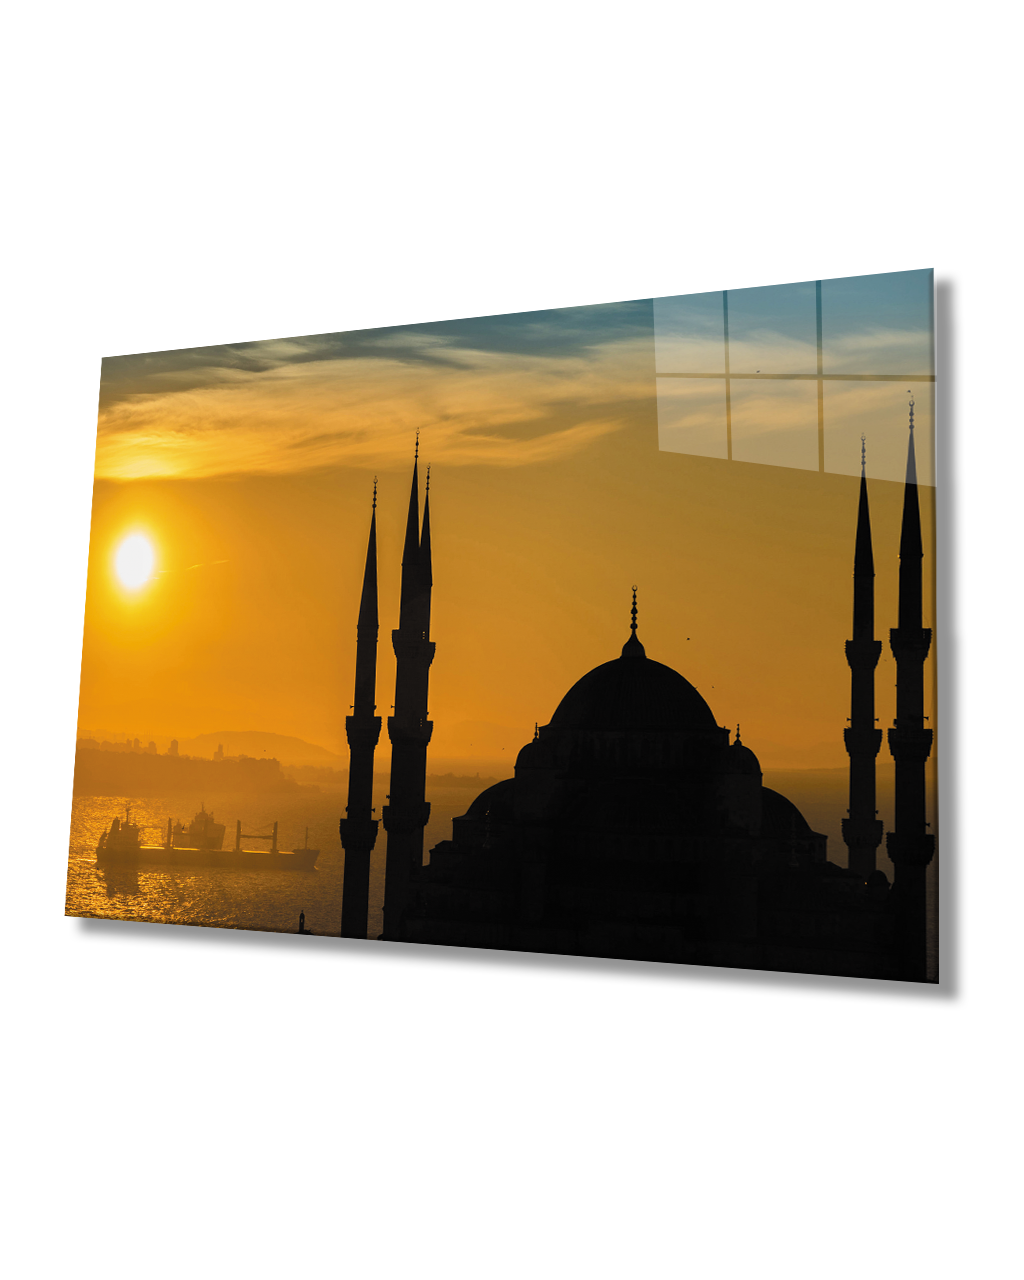 Gün Batımı Cami Deniz Cam Tablo  4mm Dayanıklı Temperli Cam Sunset Mosque Sea Glass Table 4mm Durable Tempered Glass